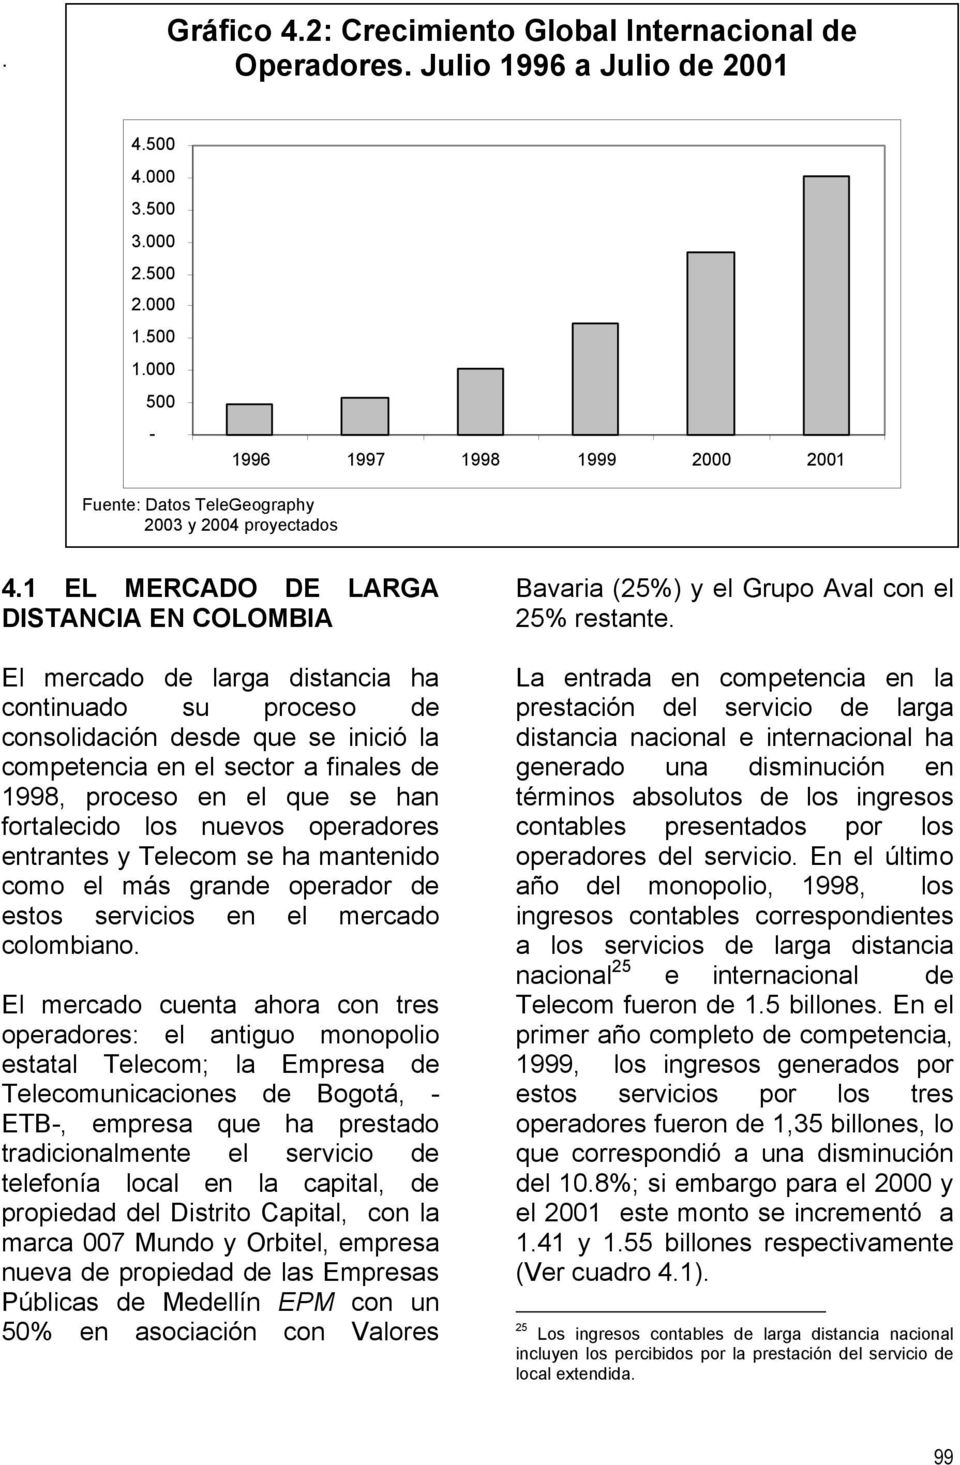 1 EL MERCADO DE LARGA DISTANCIA EN COLOMBIA El mercado de larga distancia ha continuado su proceso de consolidación desde que se inició la competencia en el sector a finales de 1998, proceso en el